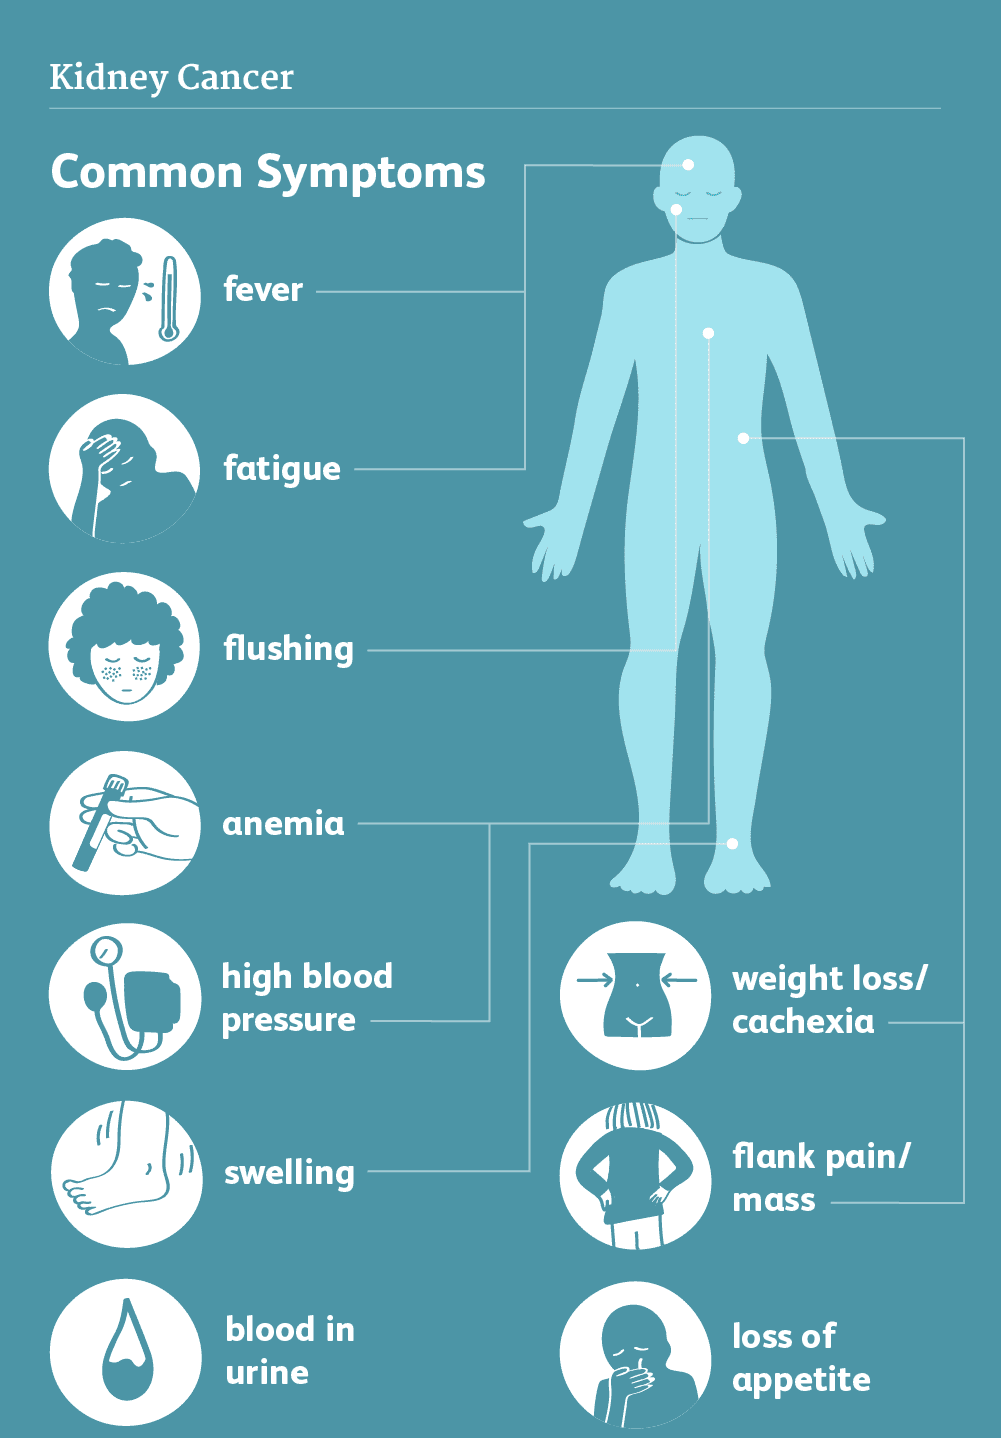 Symptoms of Kidney Cancer Image